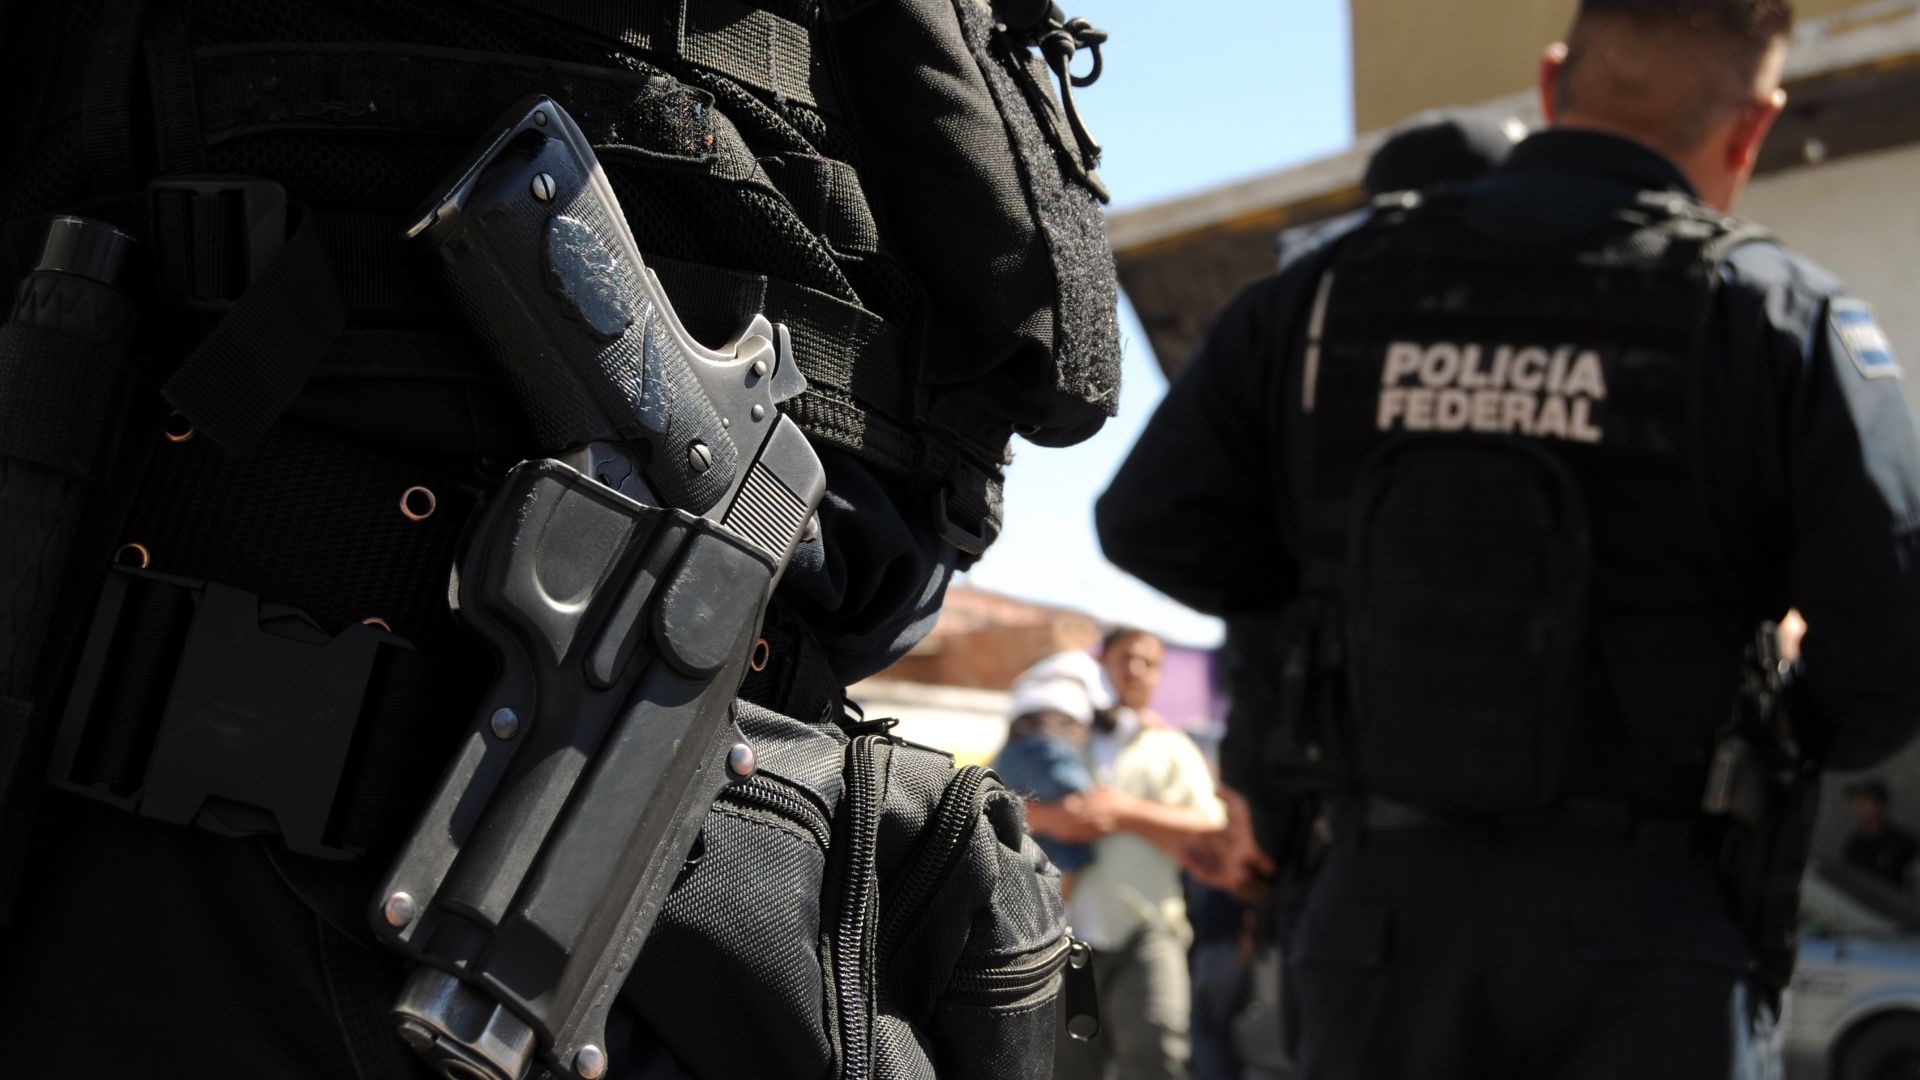 Двама мексиканци, арестувани в предградие на столицата Мексико, докато пренасяли